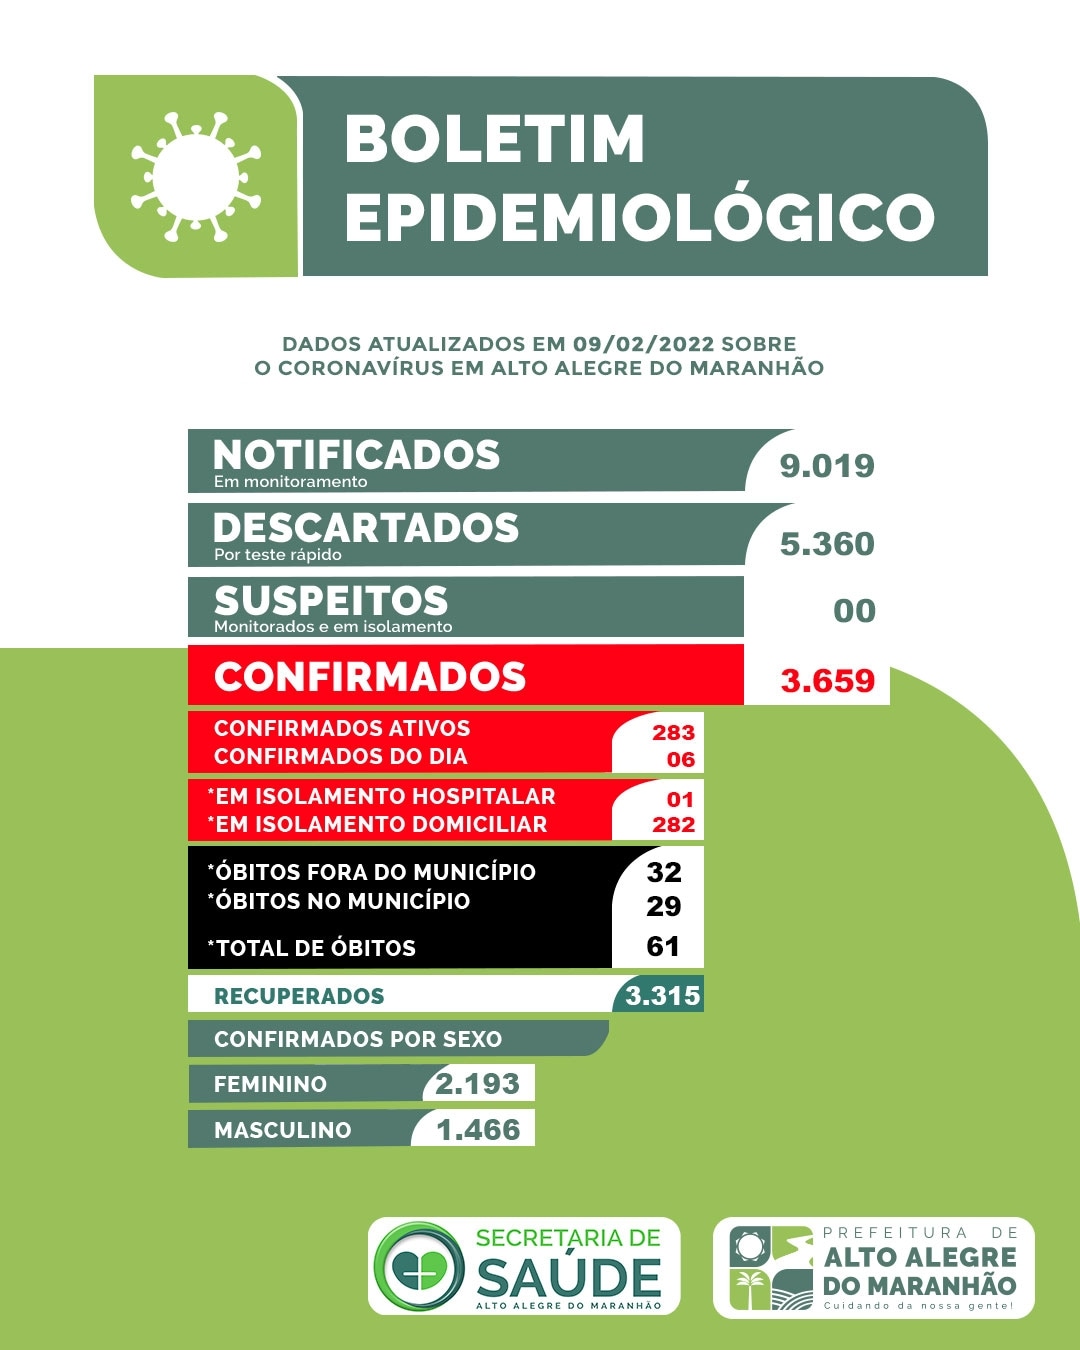 [COVID-19] Boletim epidemiológico atualizado de Alto Alegre. 6 casos novos de Covid-19 em 24horas na cidade.